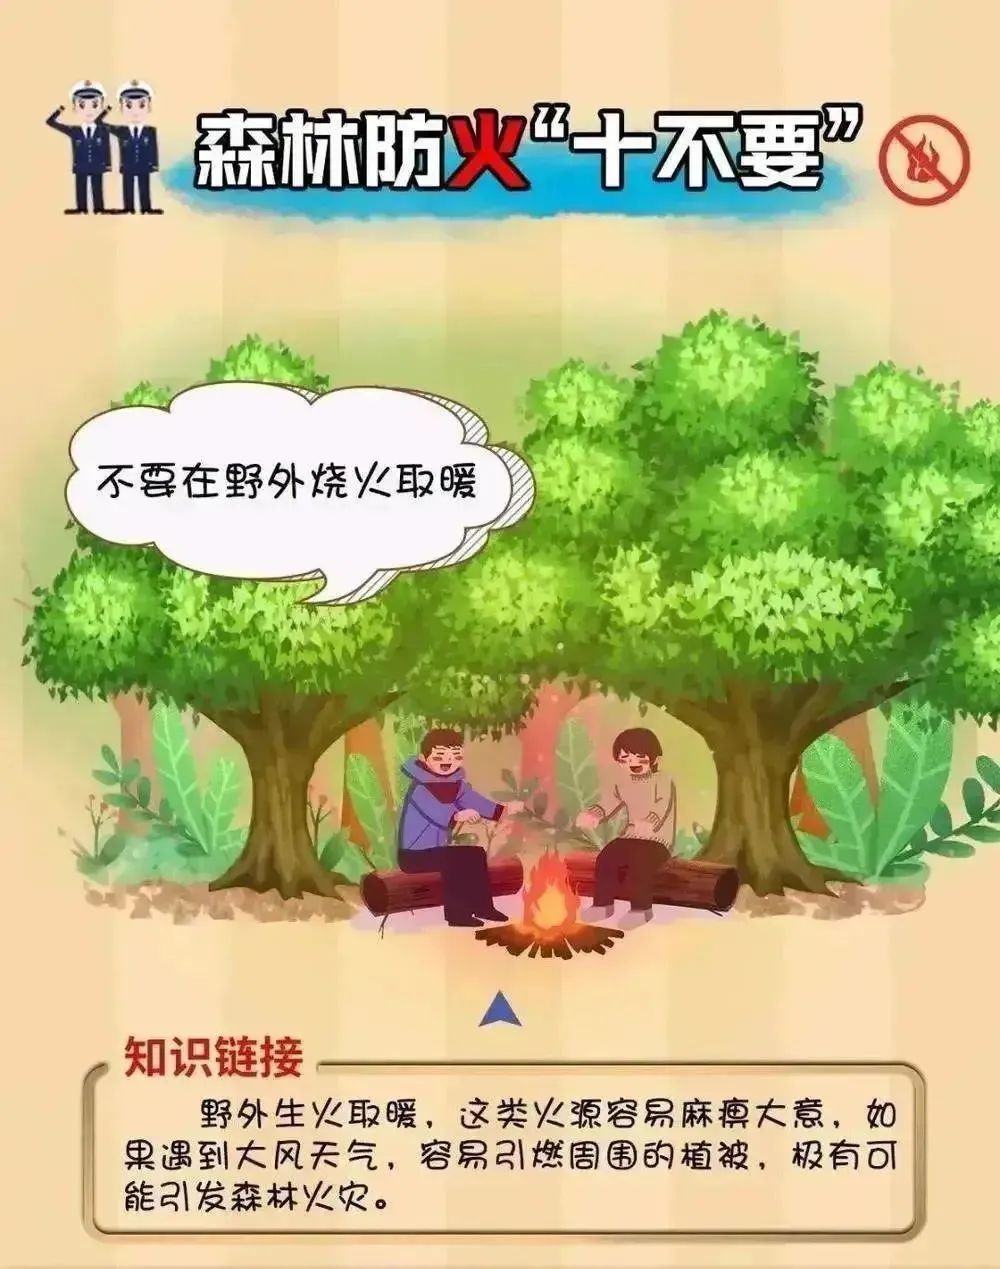 森林防火人人有责淄博大学城实验幼儿园森林防火宣传知识